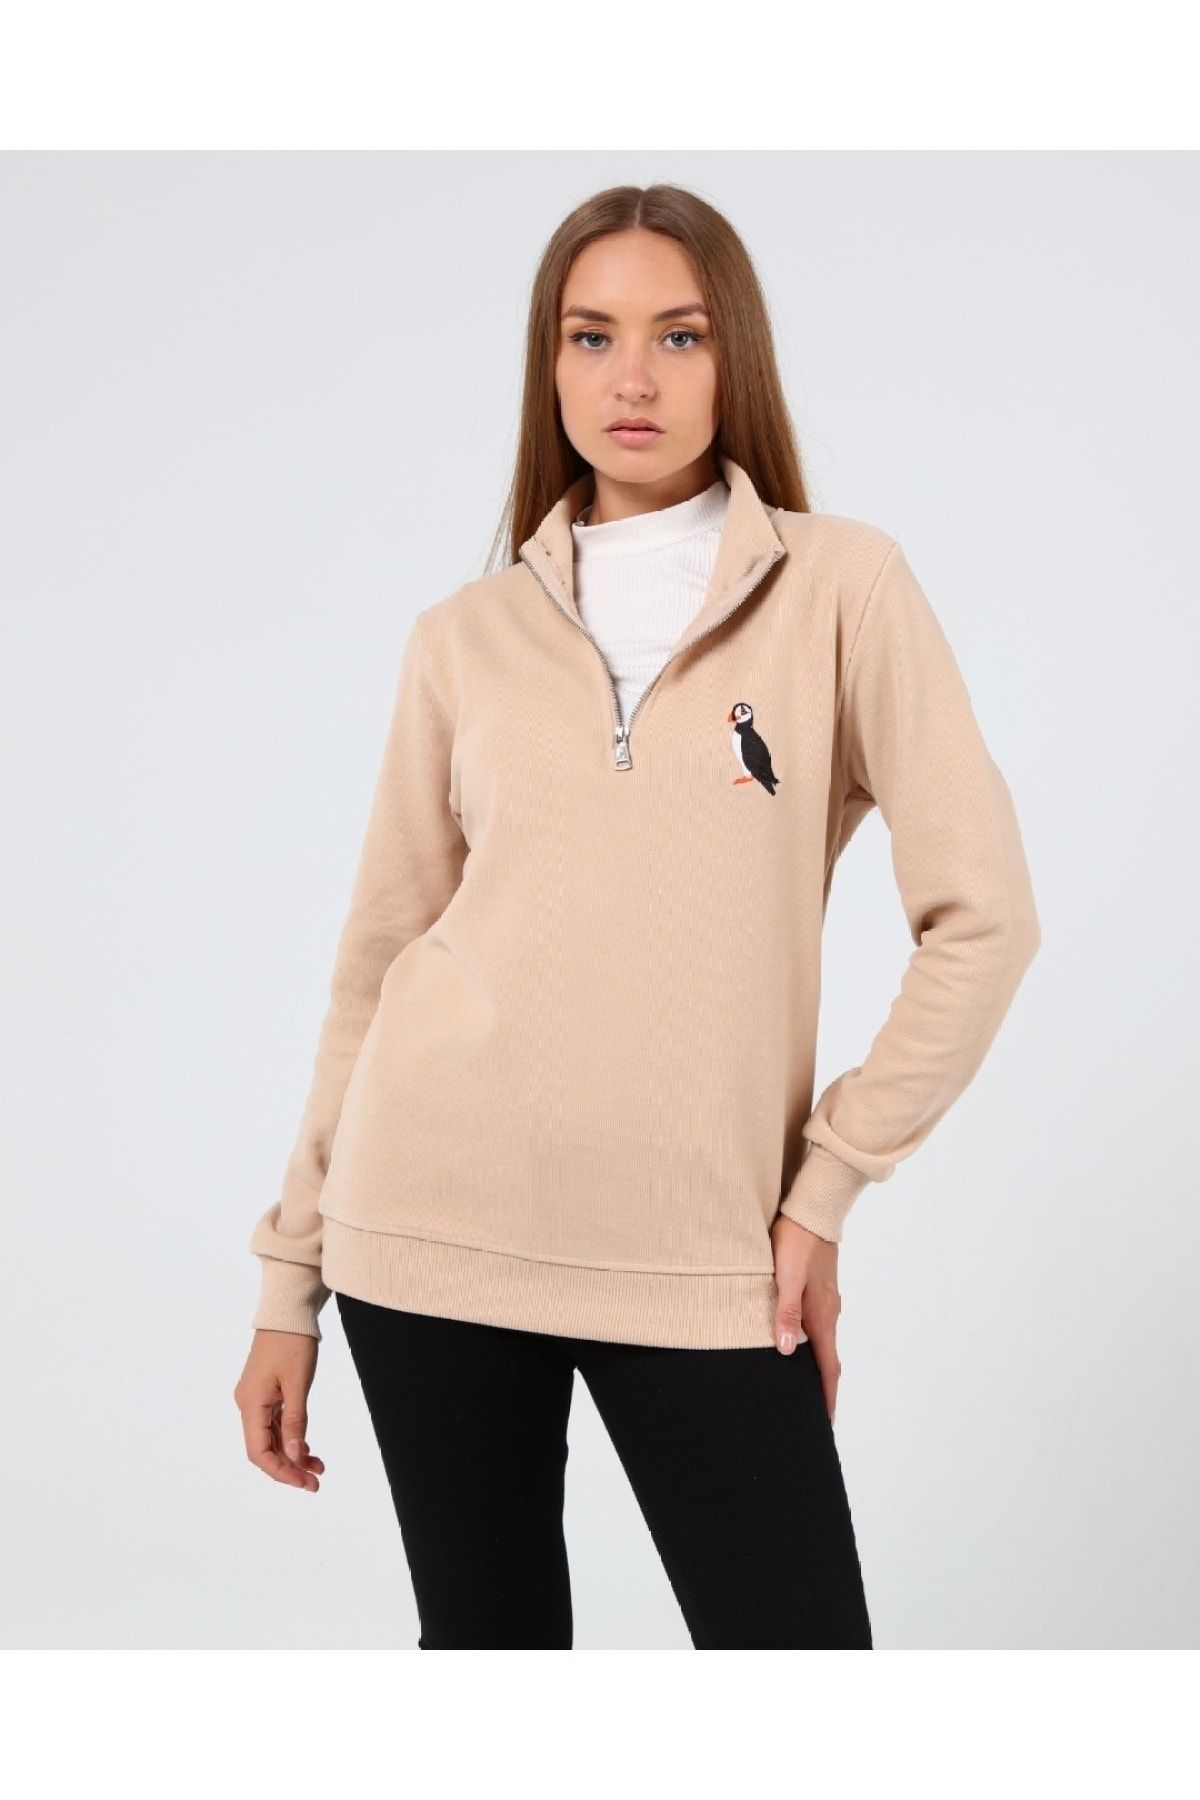 GENIUS STORE Store Kadın Selanik Outdoor Yarım Fermuarlı Sweatshirt Nakış Işlemeli Günlük Spor Sweatshirt